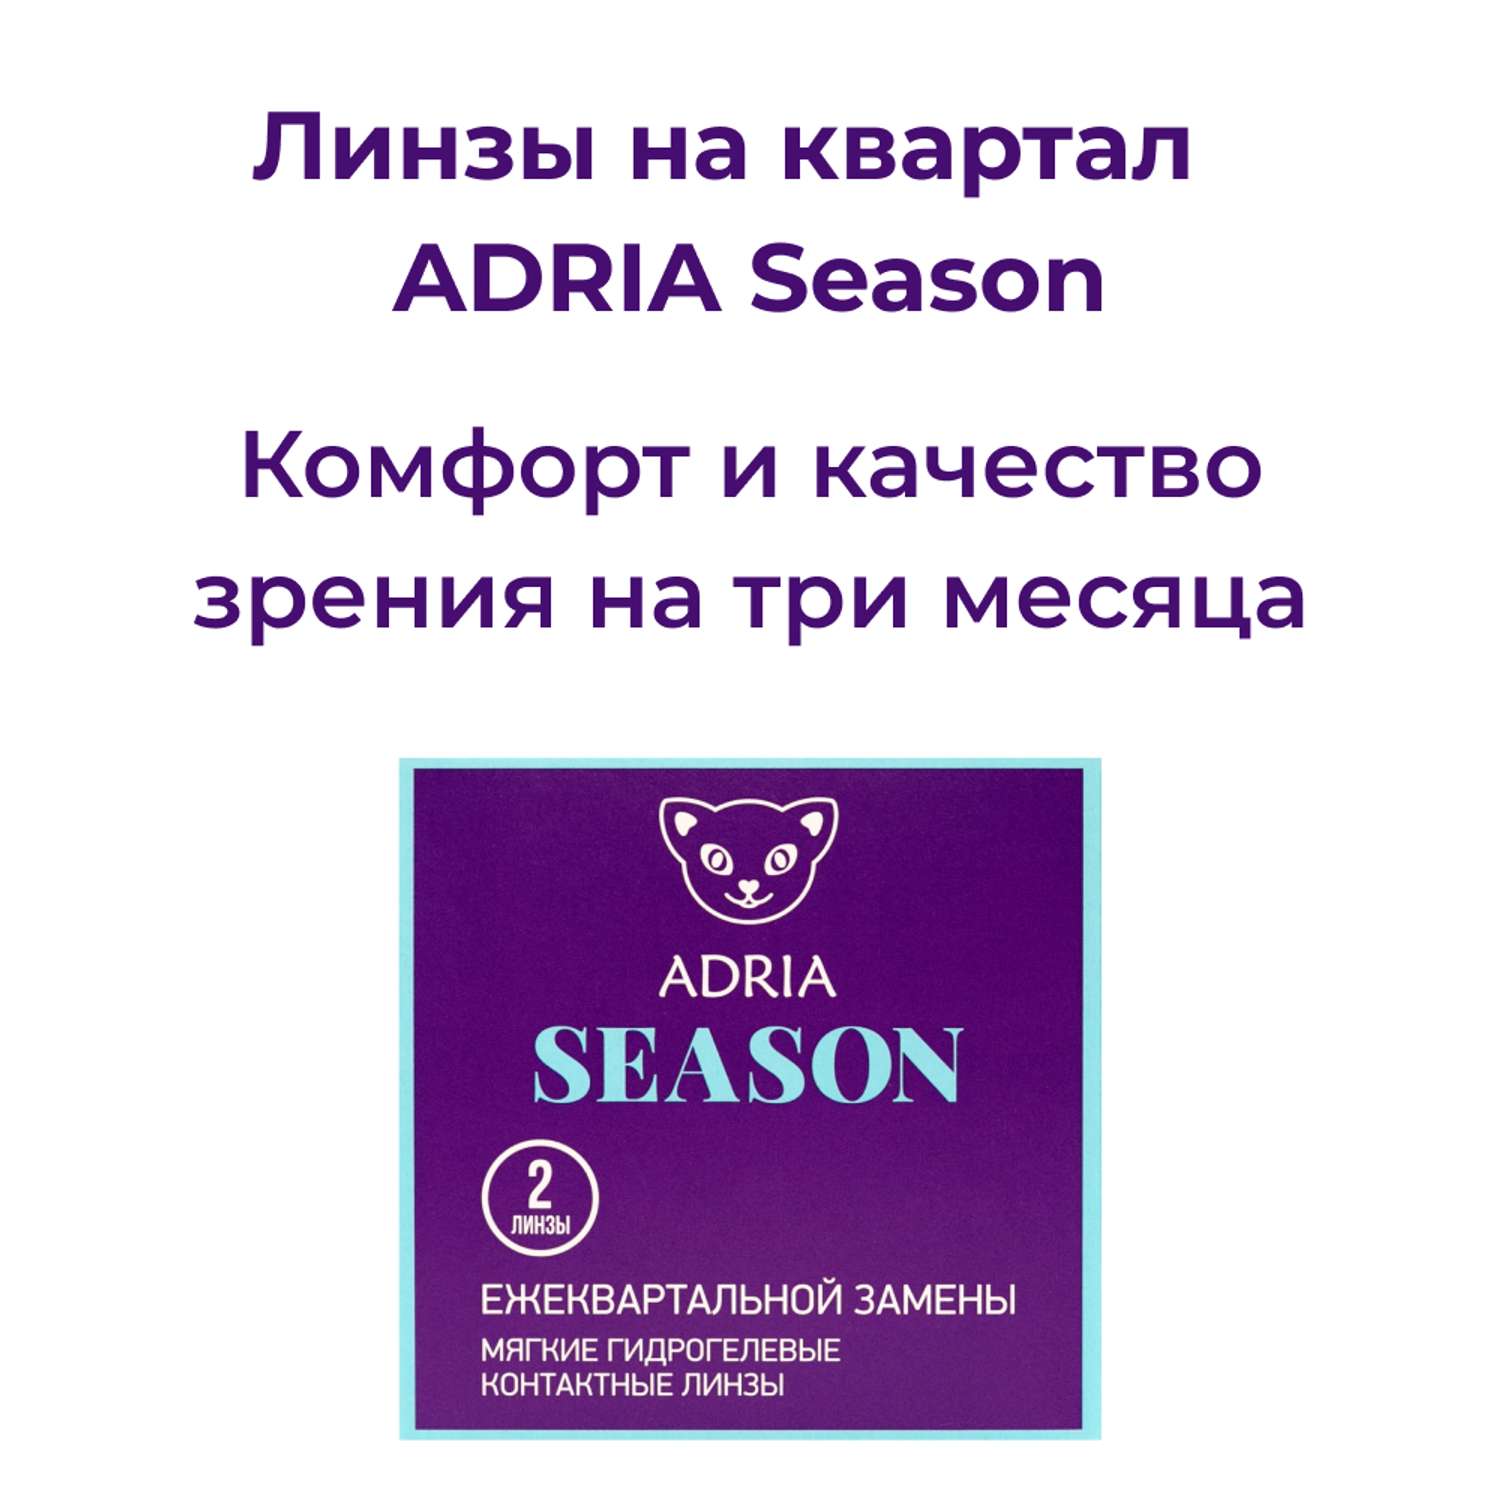 Контактные линзы ADRIA Season 2 линзы R 8.6 -4.00 - фото 2